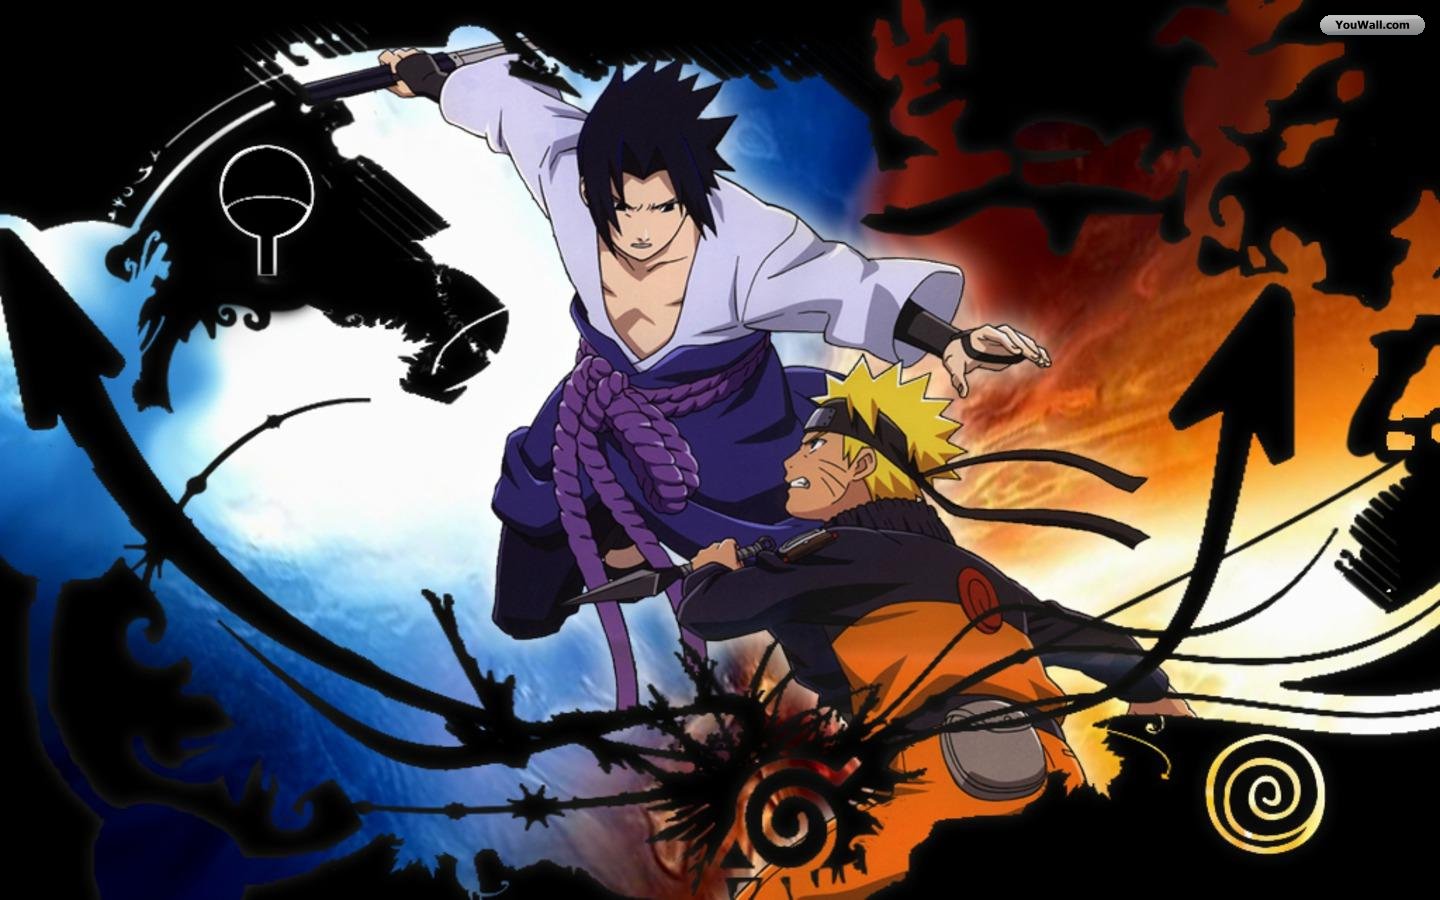 Naruto Vs Sasuke Wallpaper Hd - 1440x900 Wallpaper 